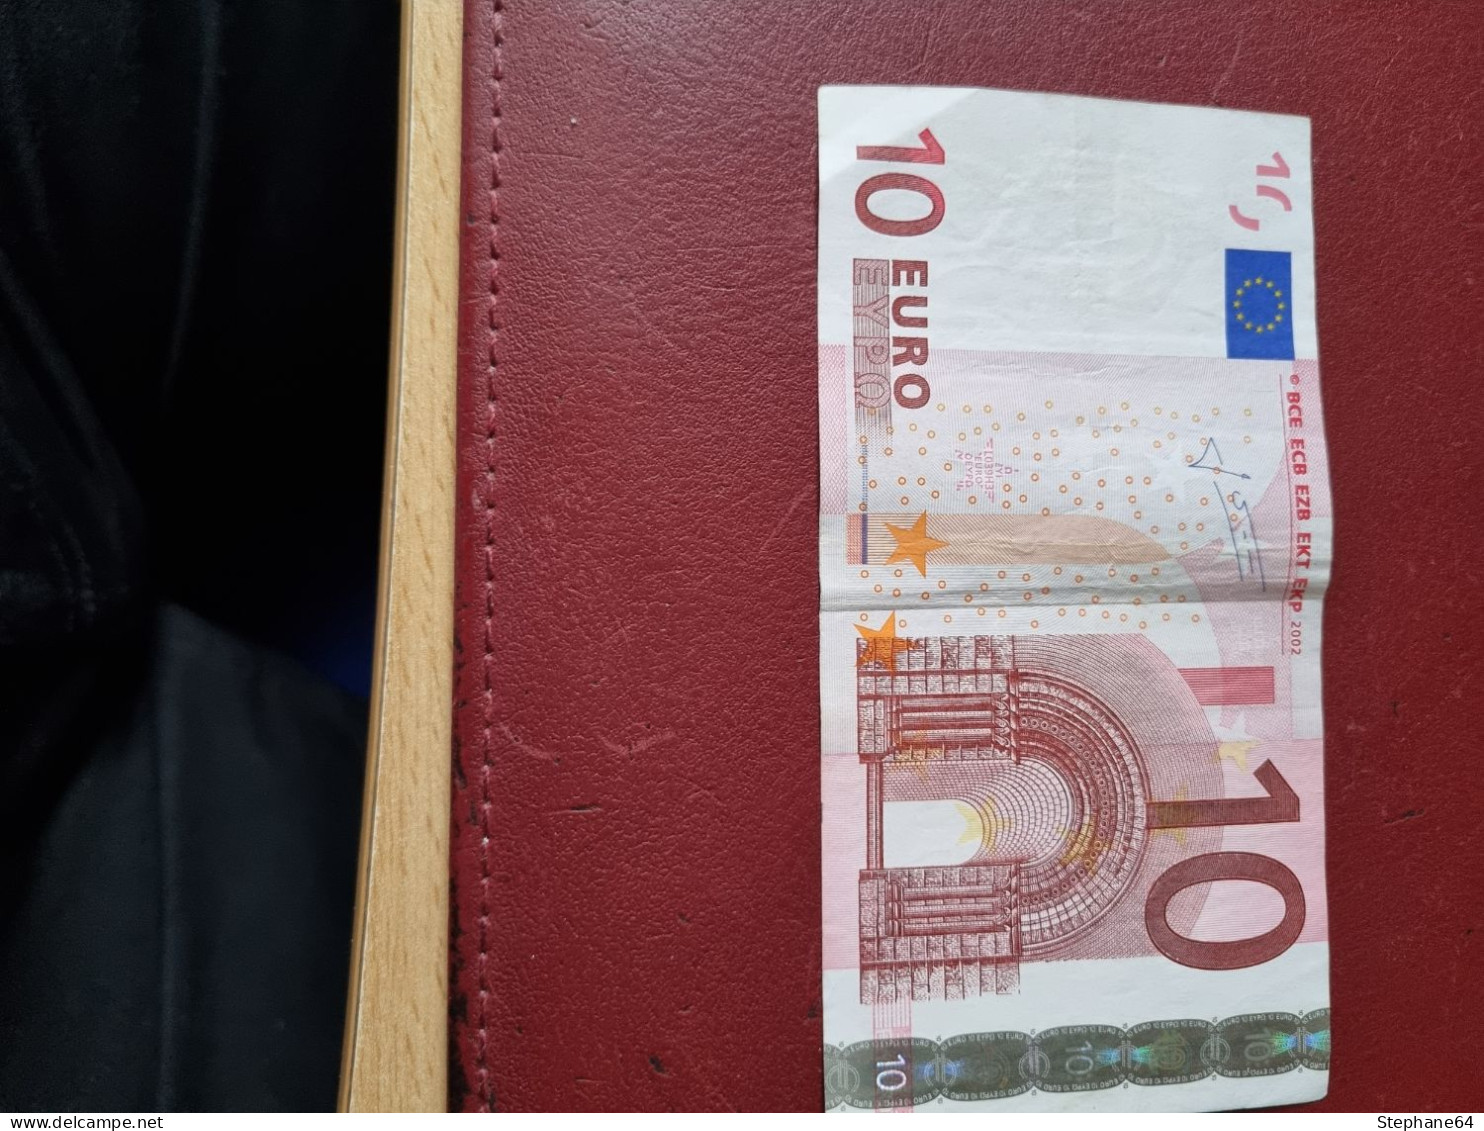 Billet De 10 Euros Datant De 2002 En Excellent état - 10 Euro